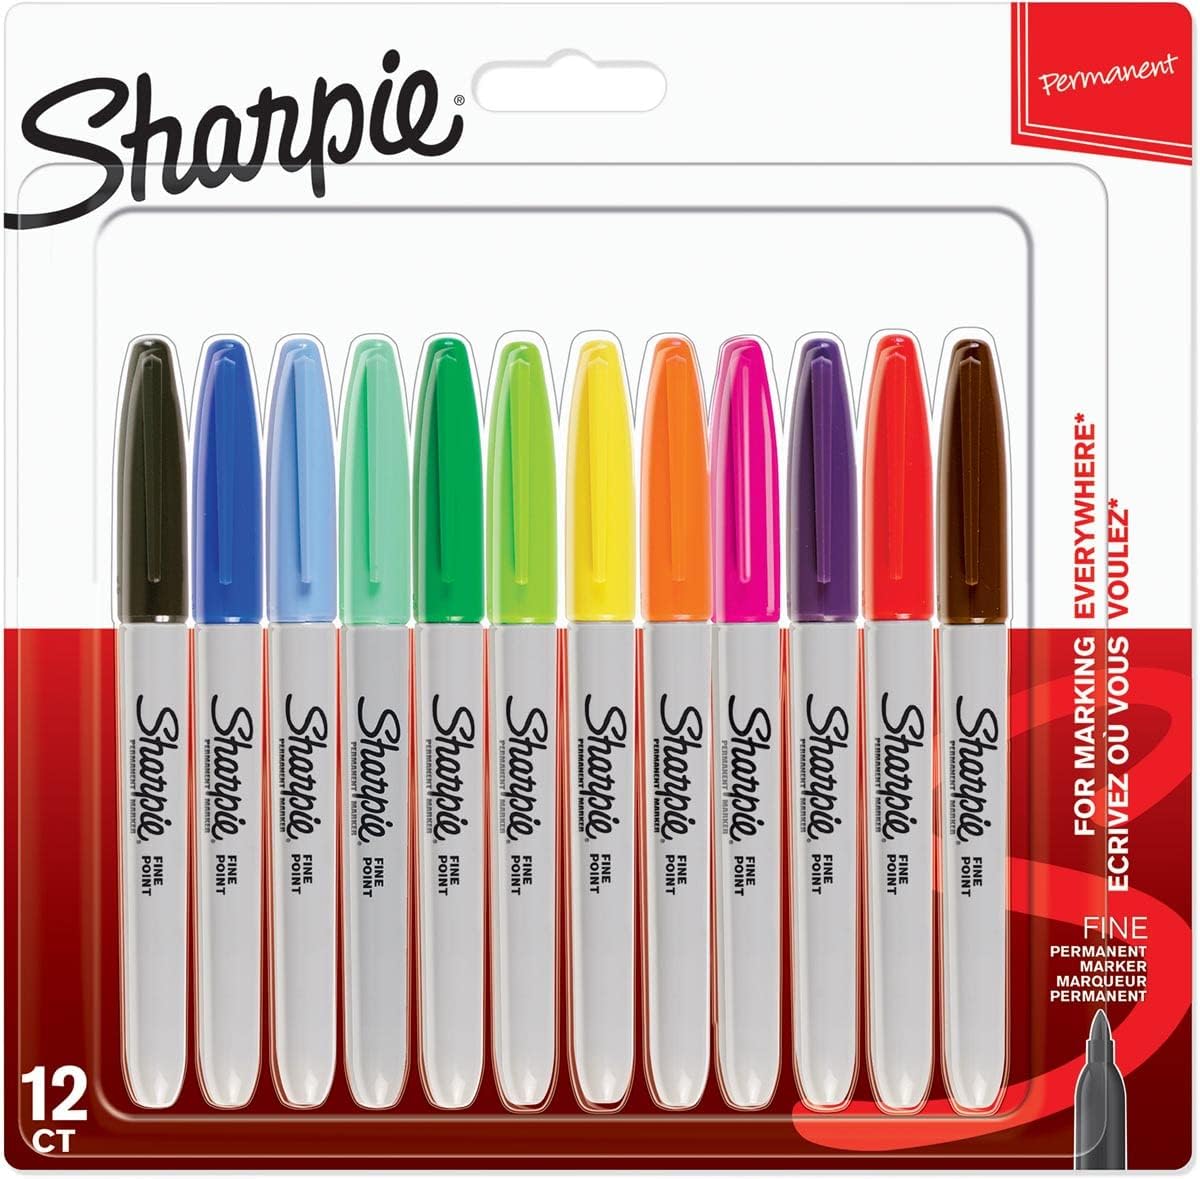 Sharpie-Marqueur permanent-Paquet de 12-Fine